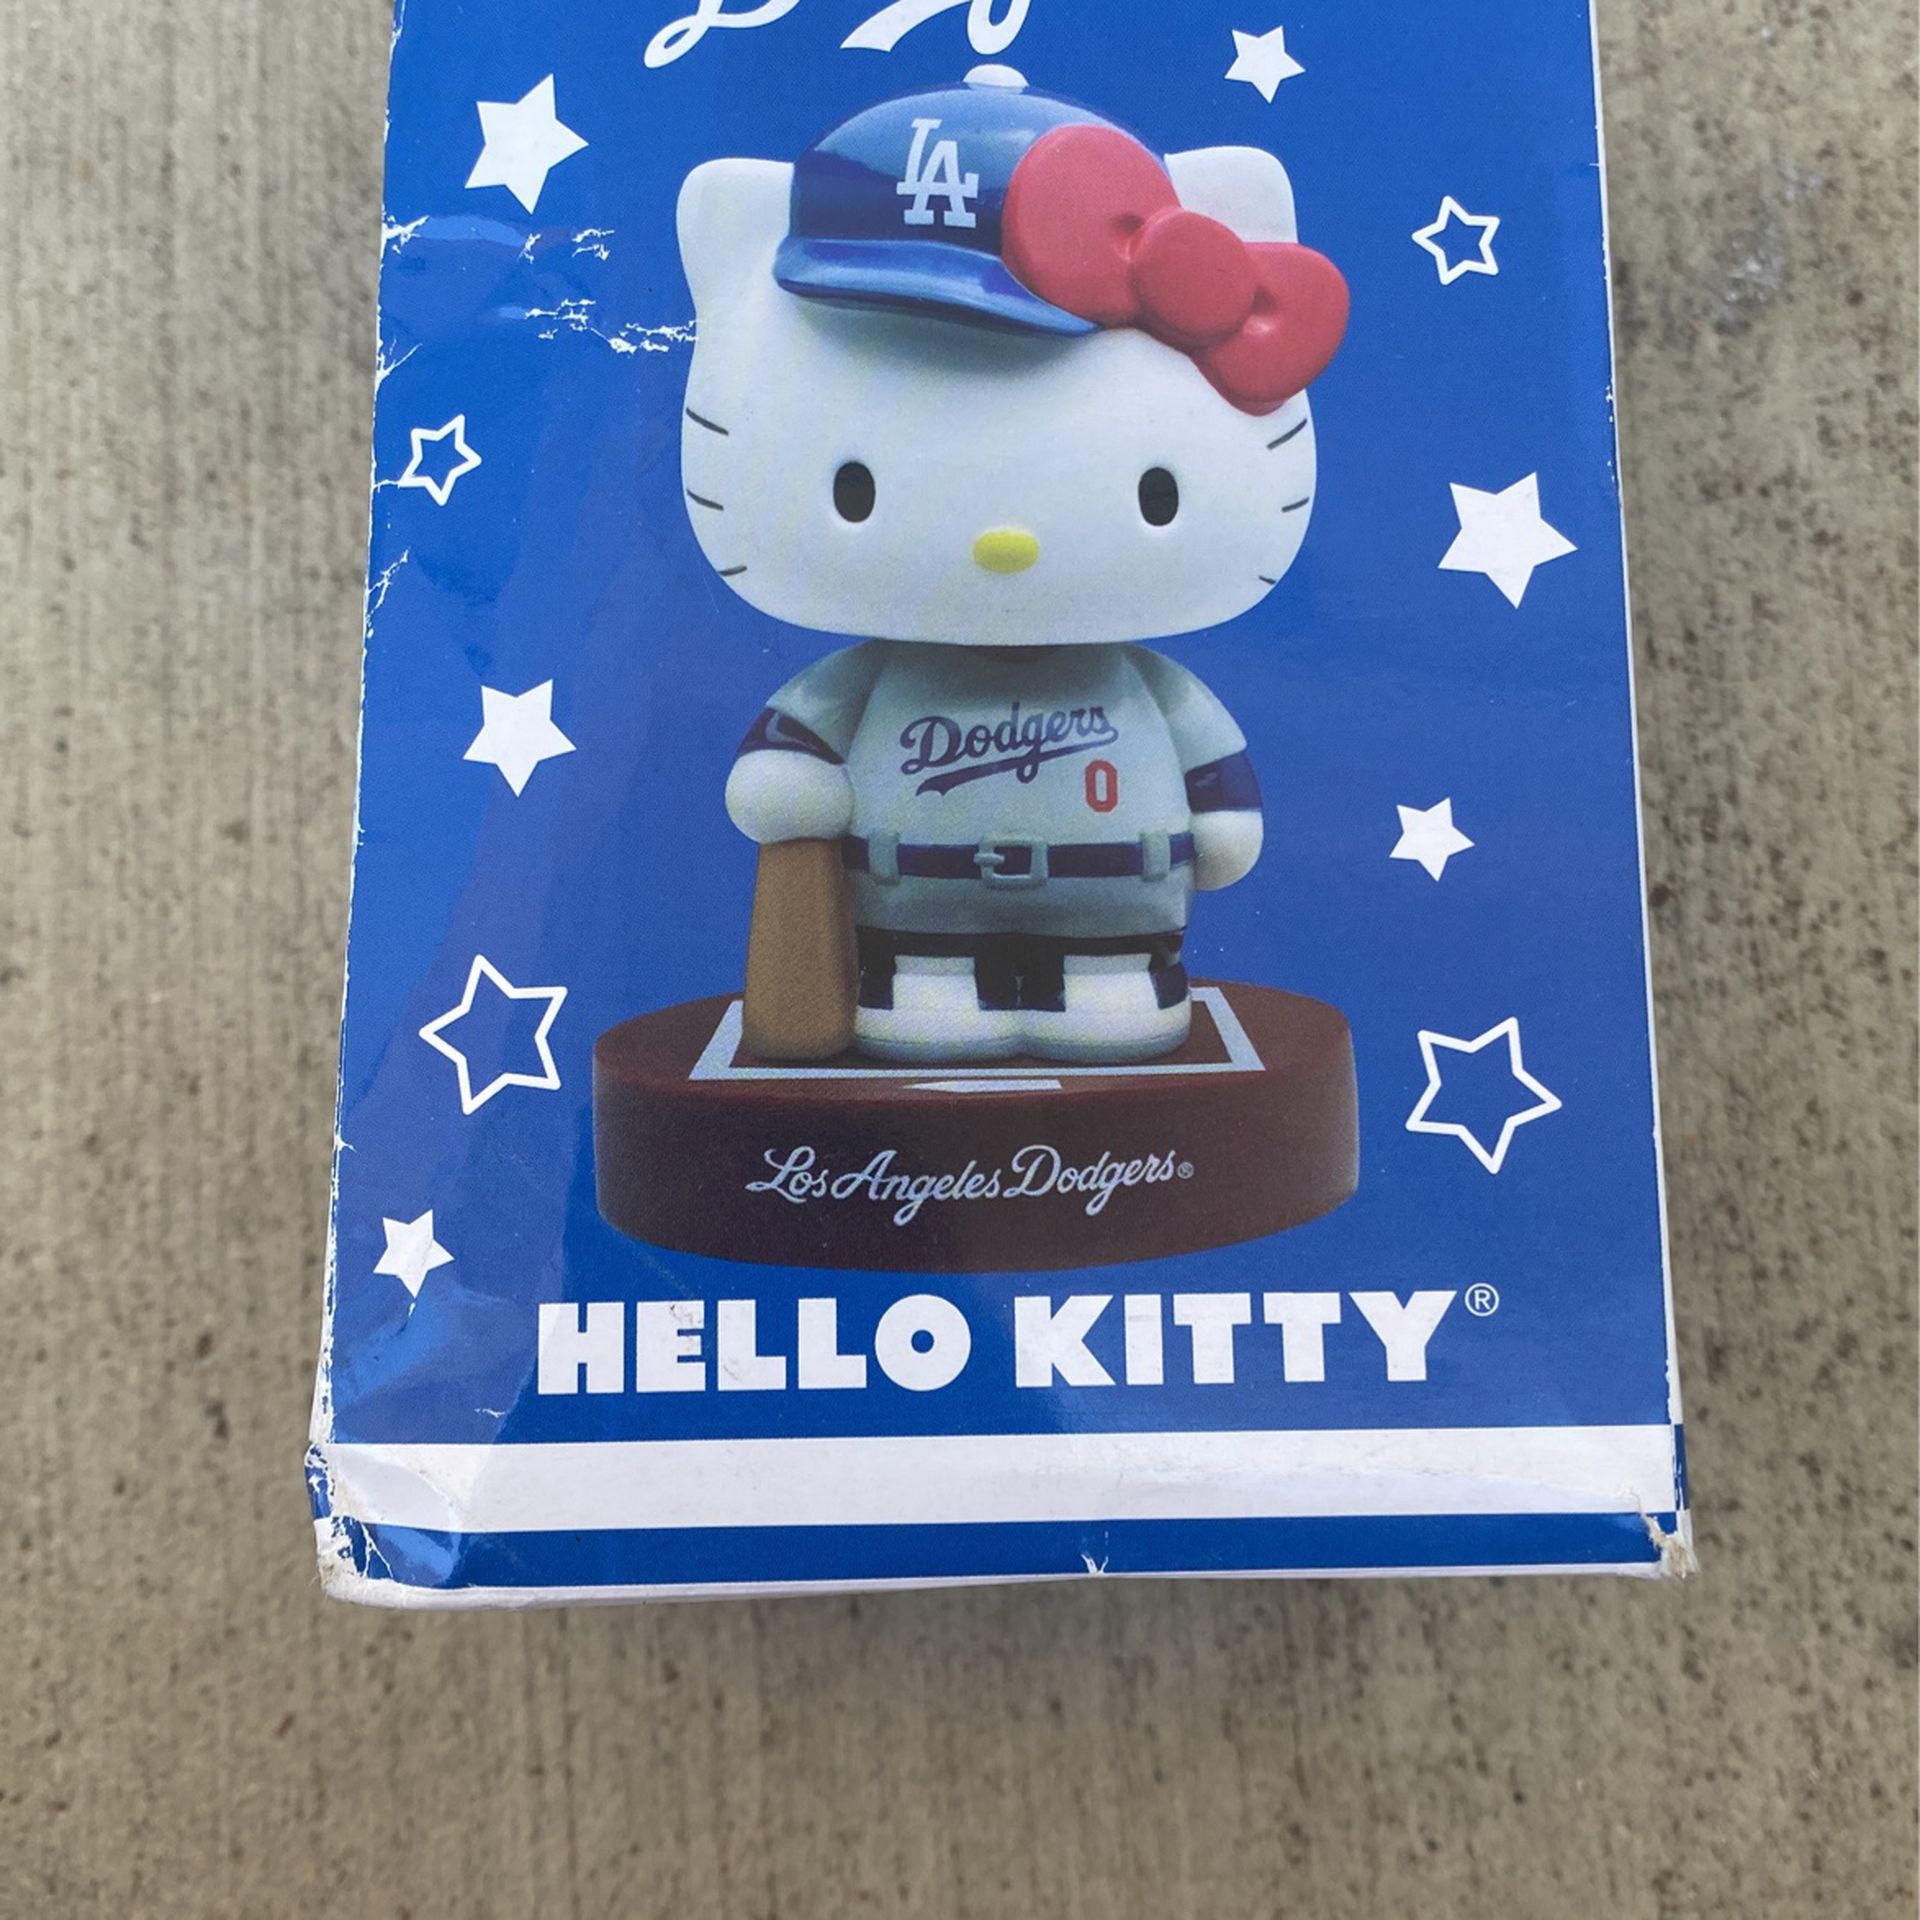 LA Dodgers Hello Kitty Bobble Head 2014 for Sale in Pomona, CA - OfferUp